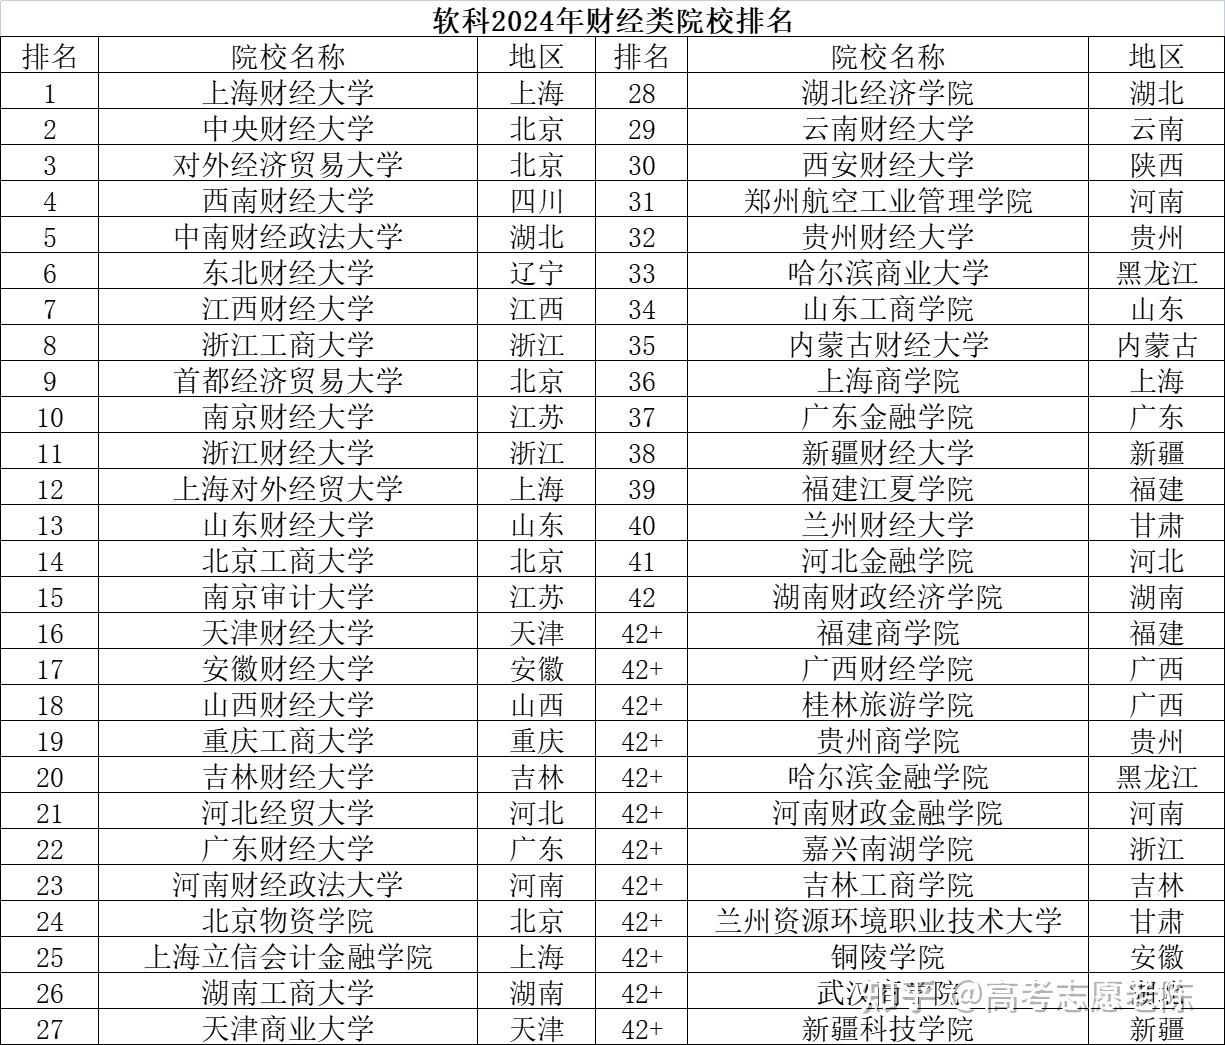 而浙江另一所著名的财经类院校浙江工商大学则排名在第八位,浙江工商